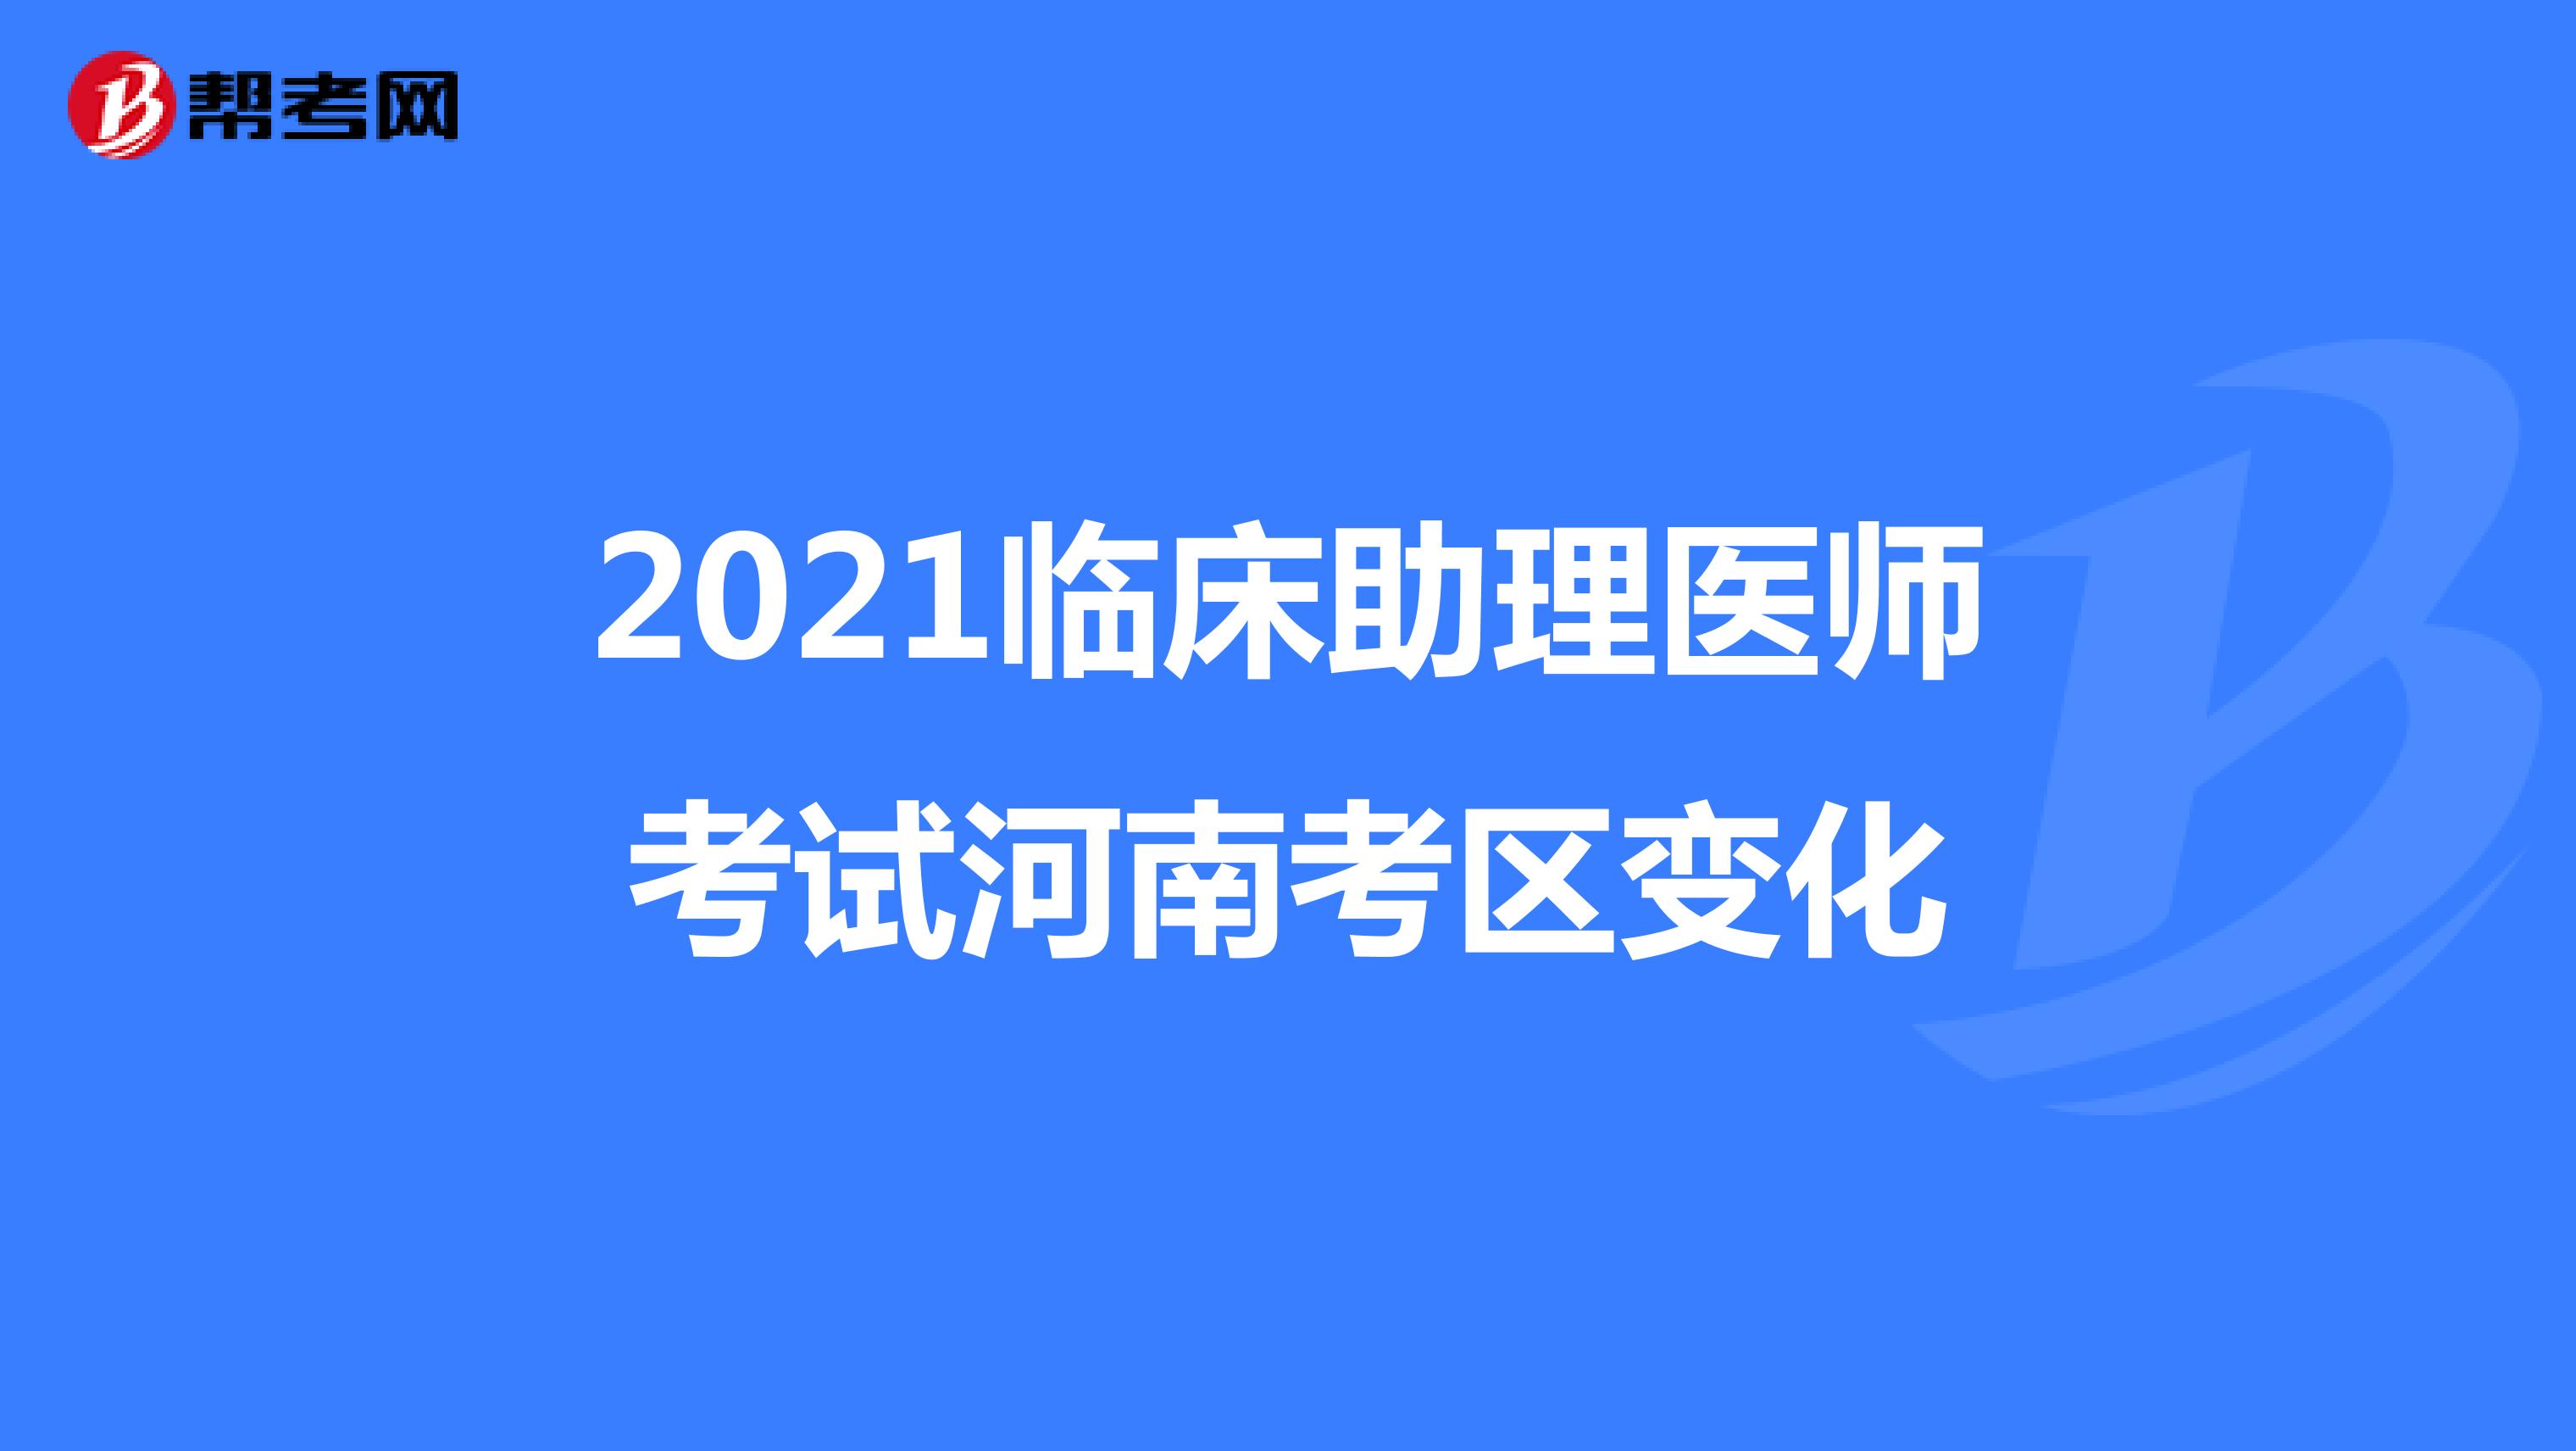 2021临床助理医师考试河南考区变化